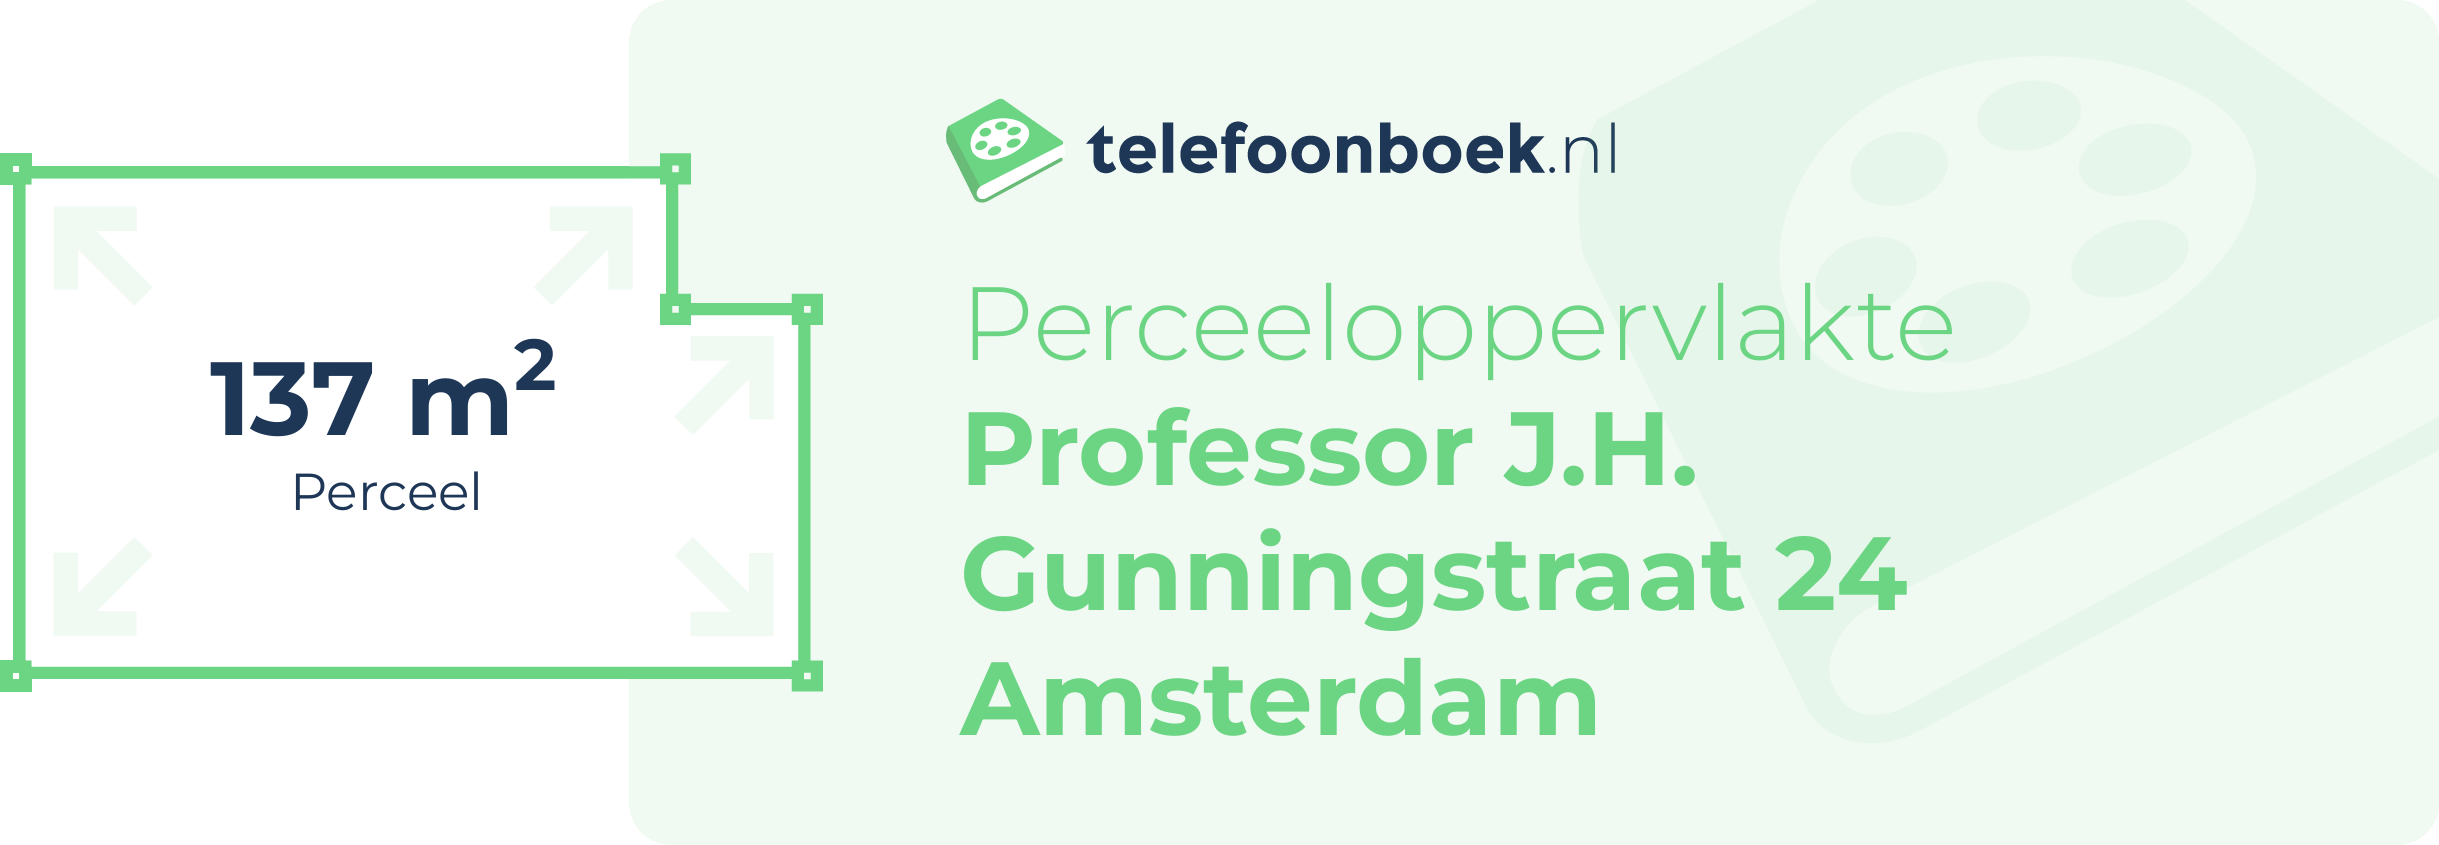 Perceeloppervlakte Professor J.H. Gunningstraat 24 Amsterdam